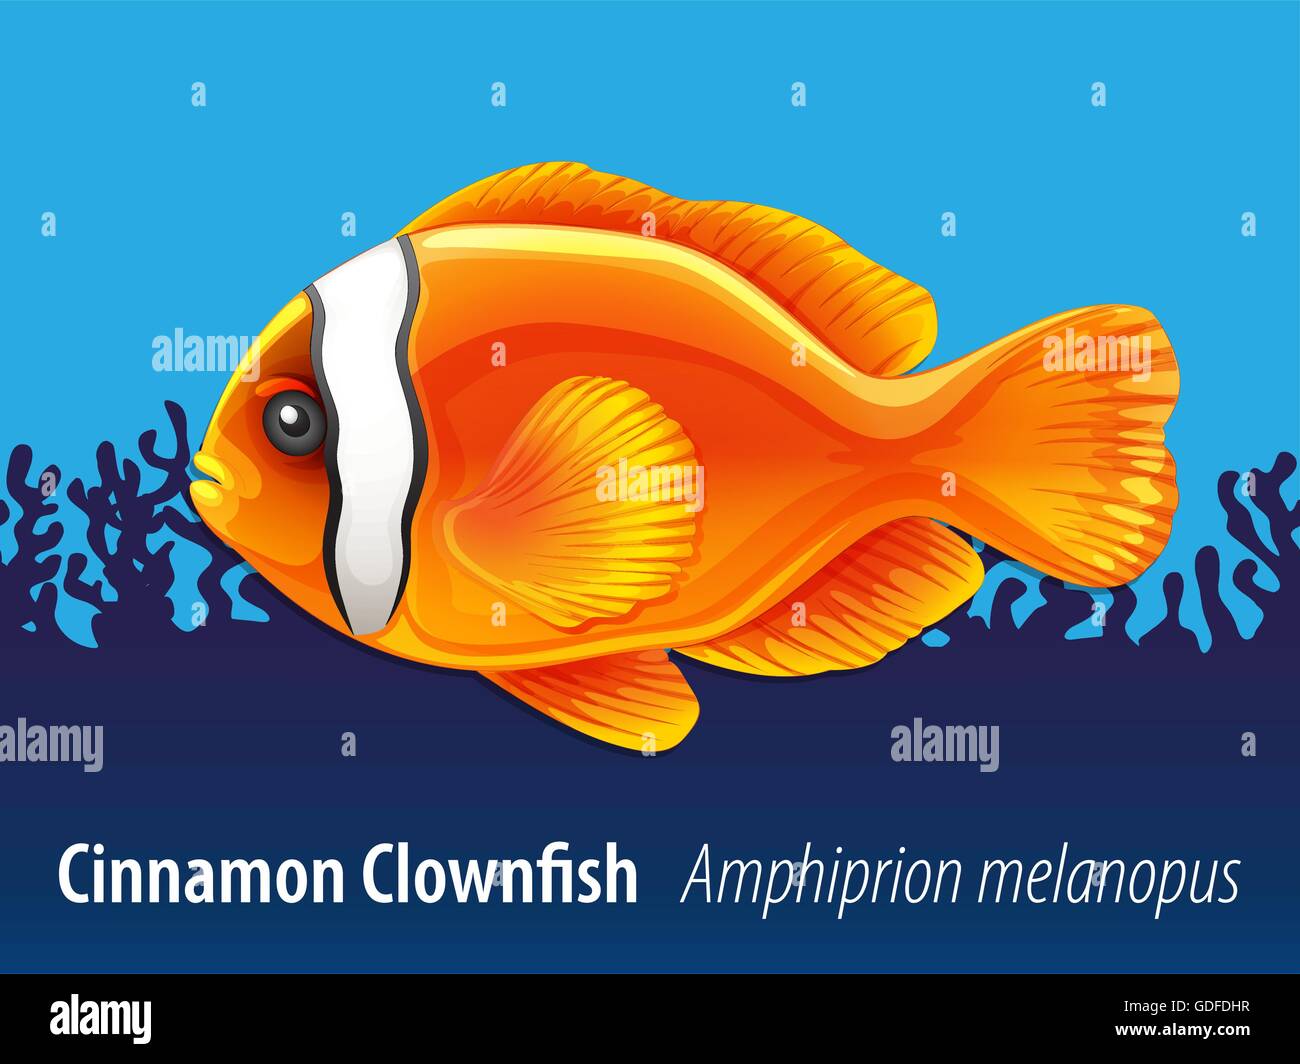 Cinnamon clownfish nuotare sotto il mare illustrazione Illustrazione Vettoriale